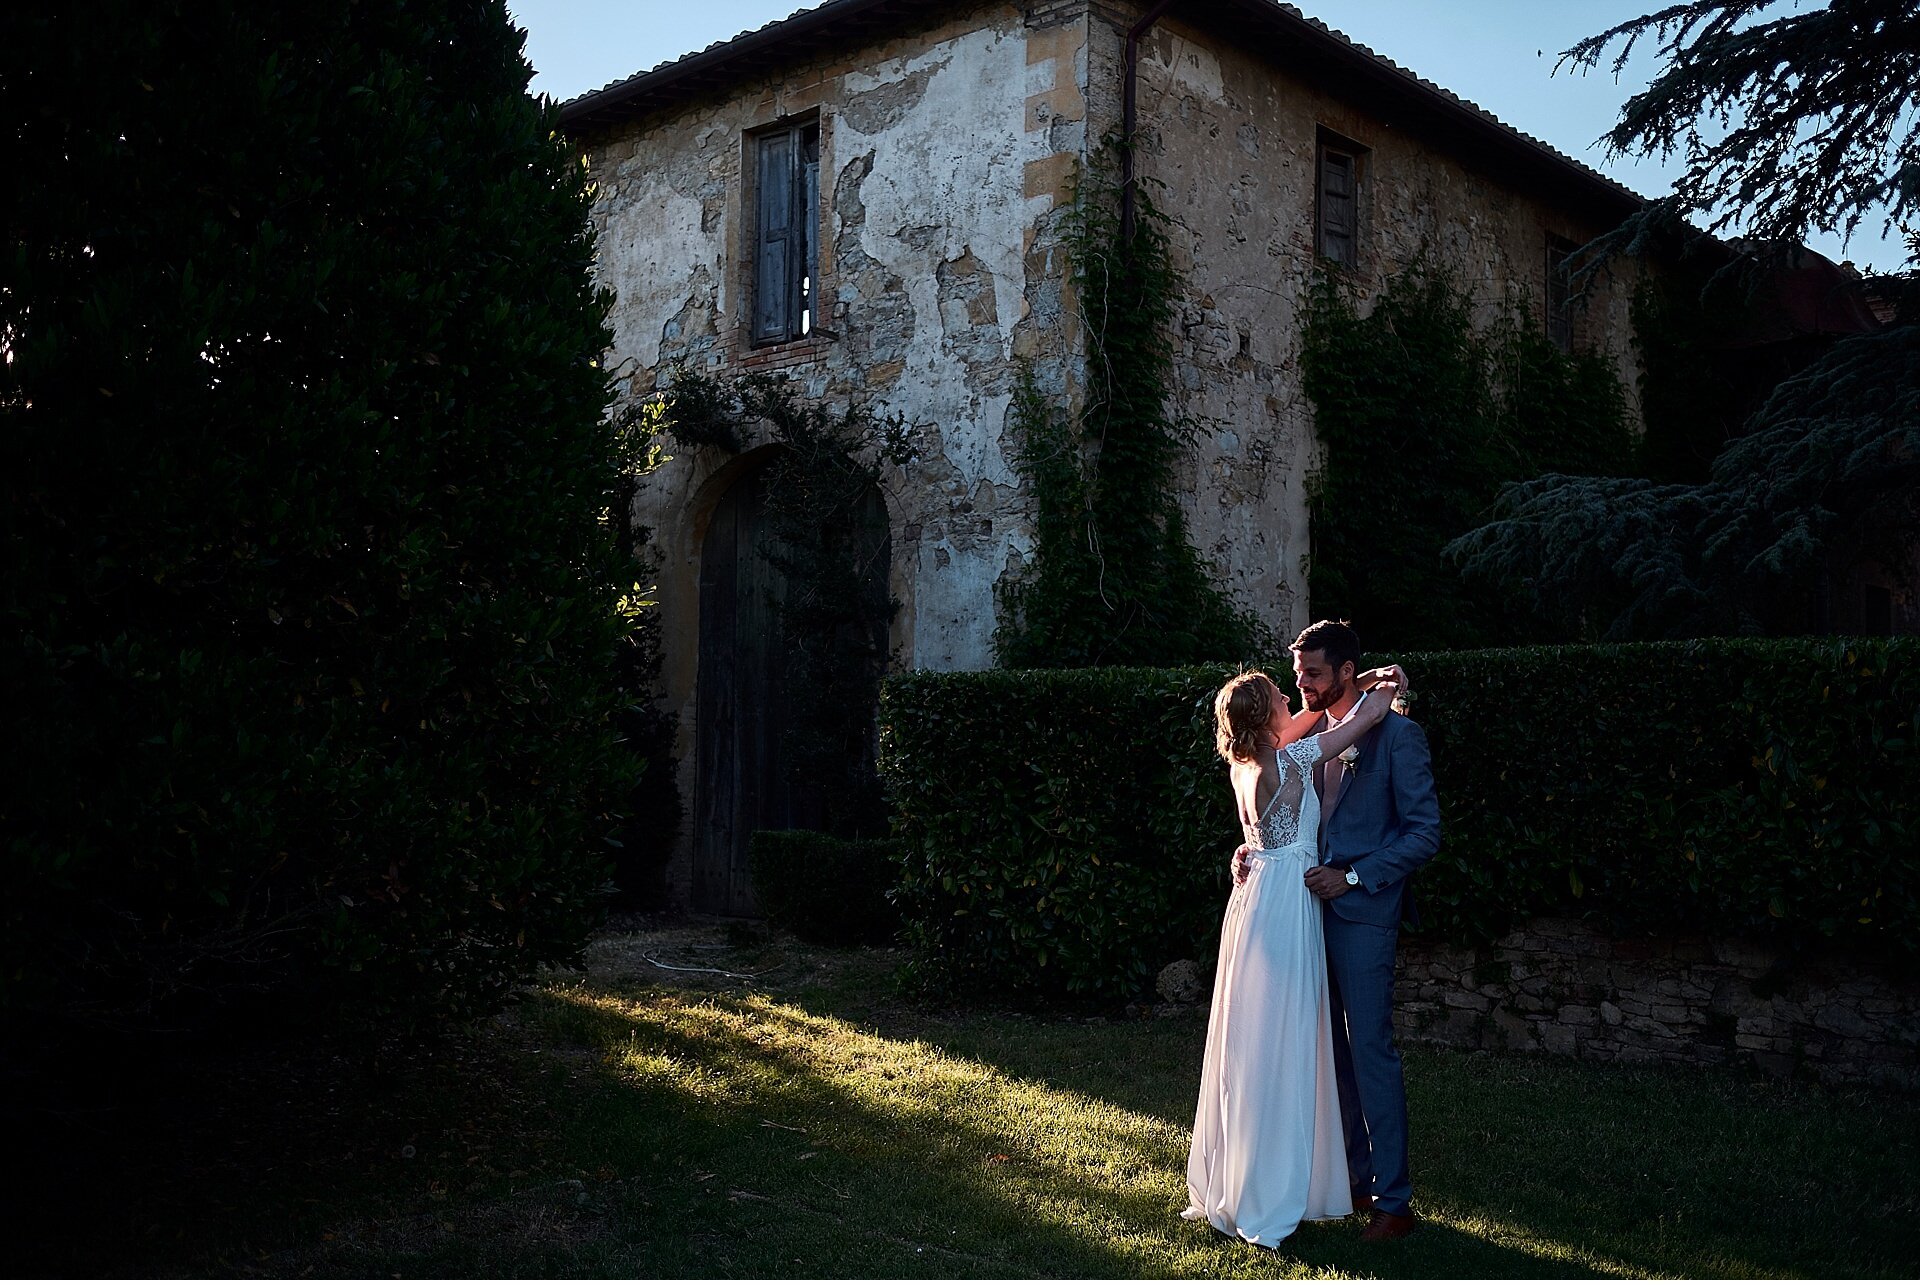  Stupendo matrimonio estivo a Villa Catignano, nelle colline del Chianti alle porte di Siena. Un luogo molto bello dove gli sposi hanno effettuato la preparazione. Aperitivo in stile pic-nic nel giardino, e poi cena organizzata da Lodovichi servita s